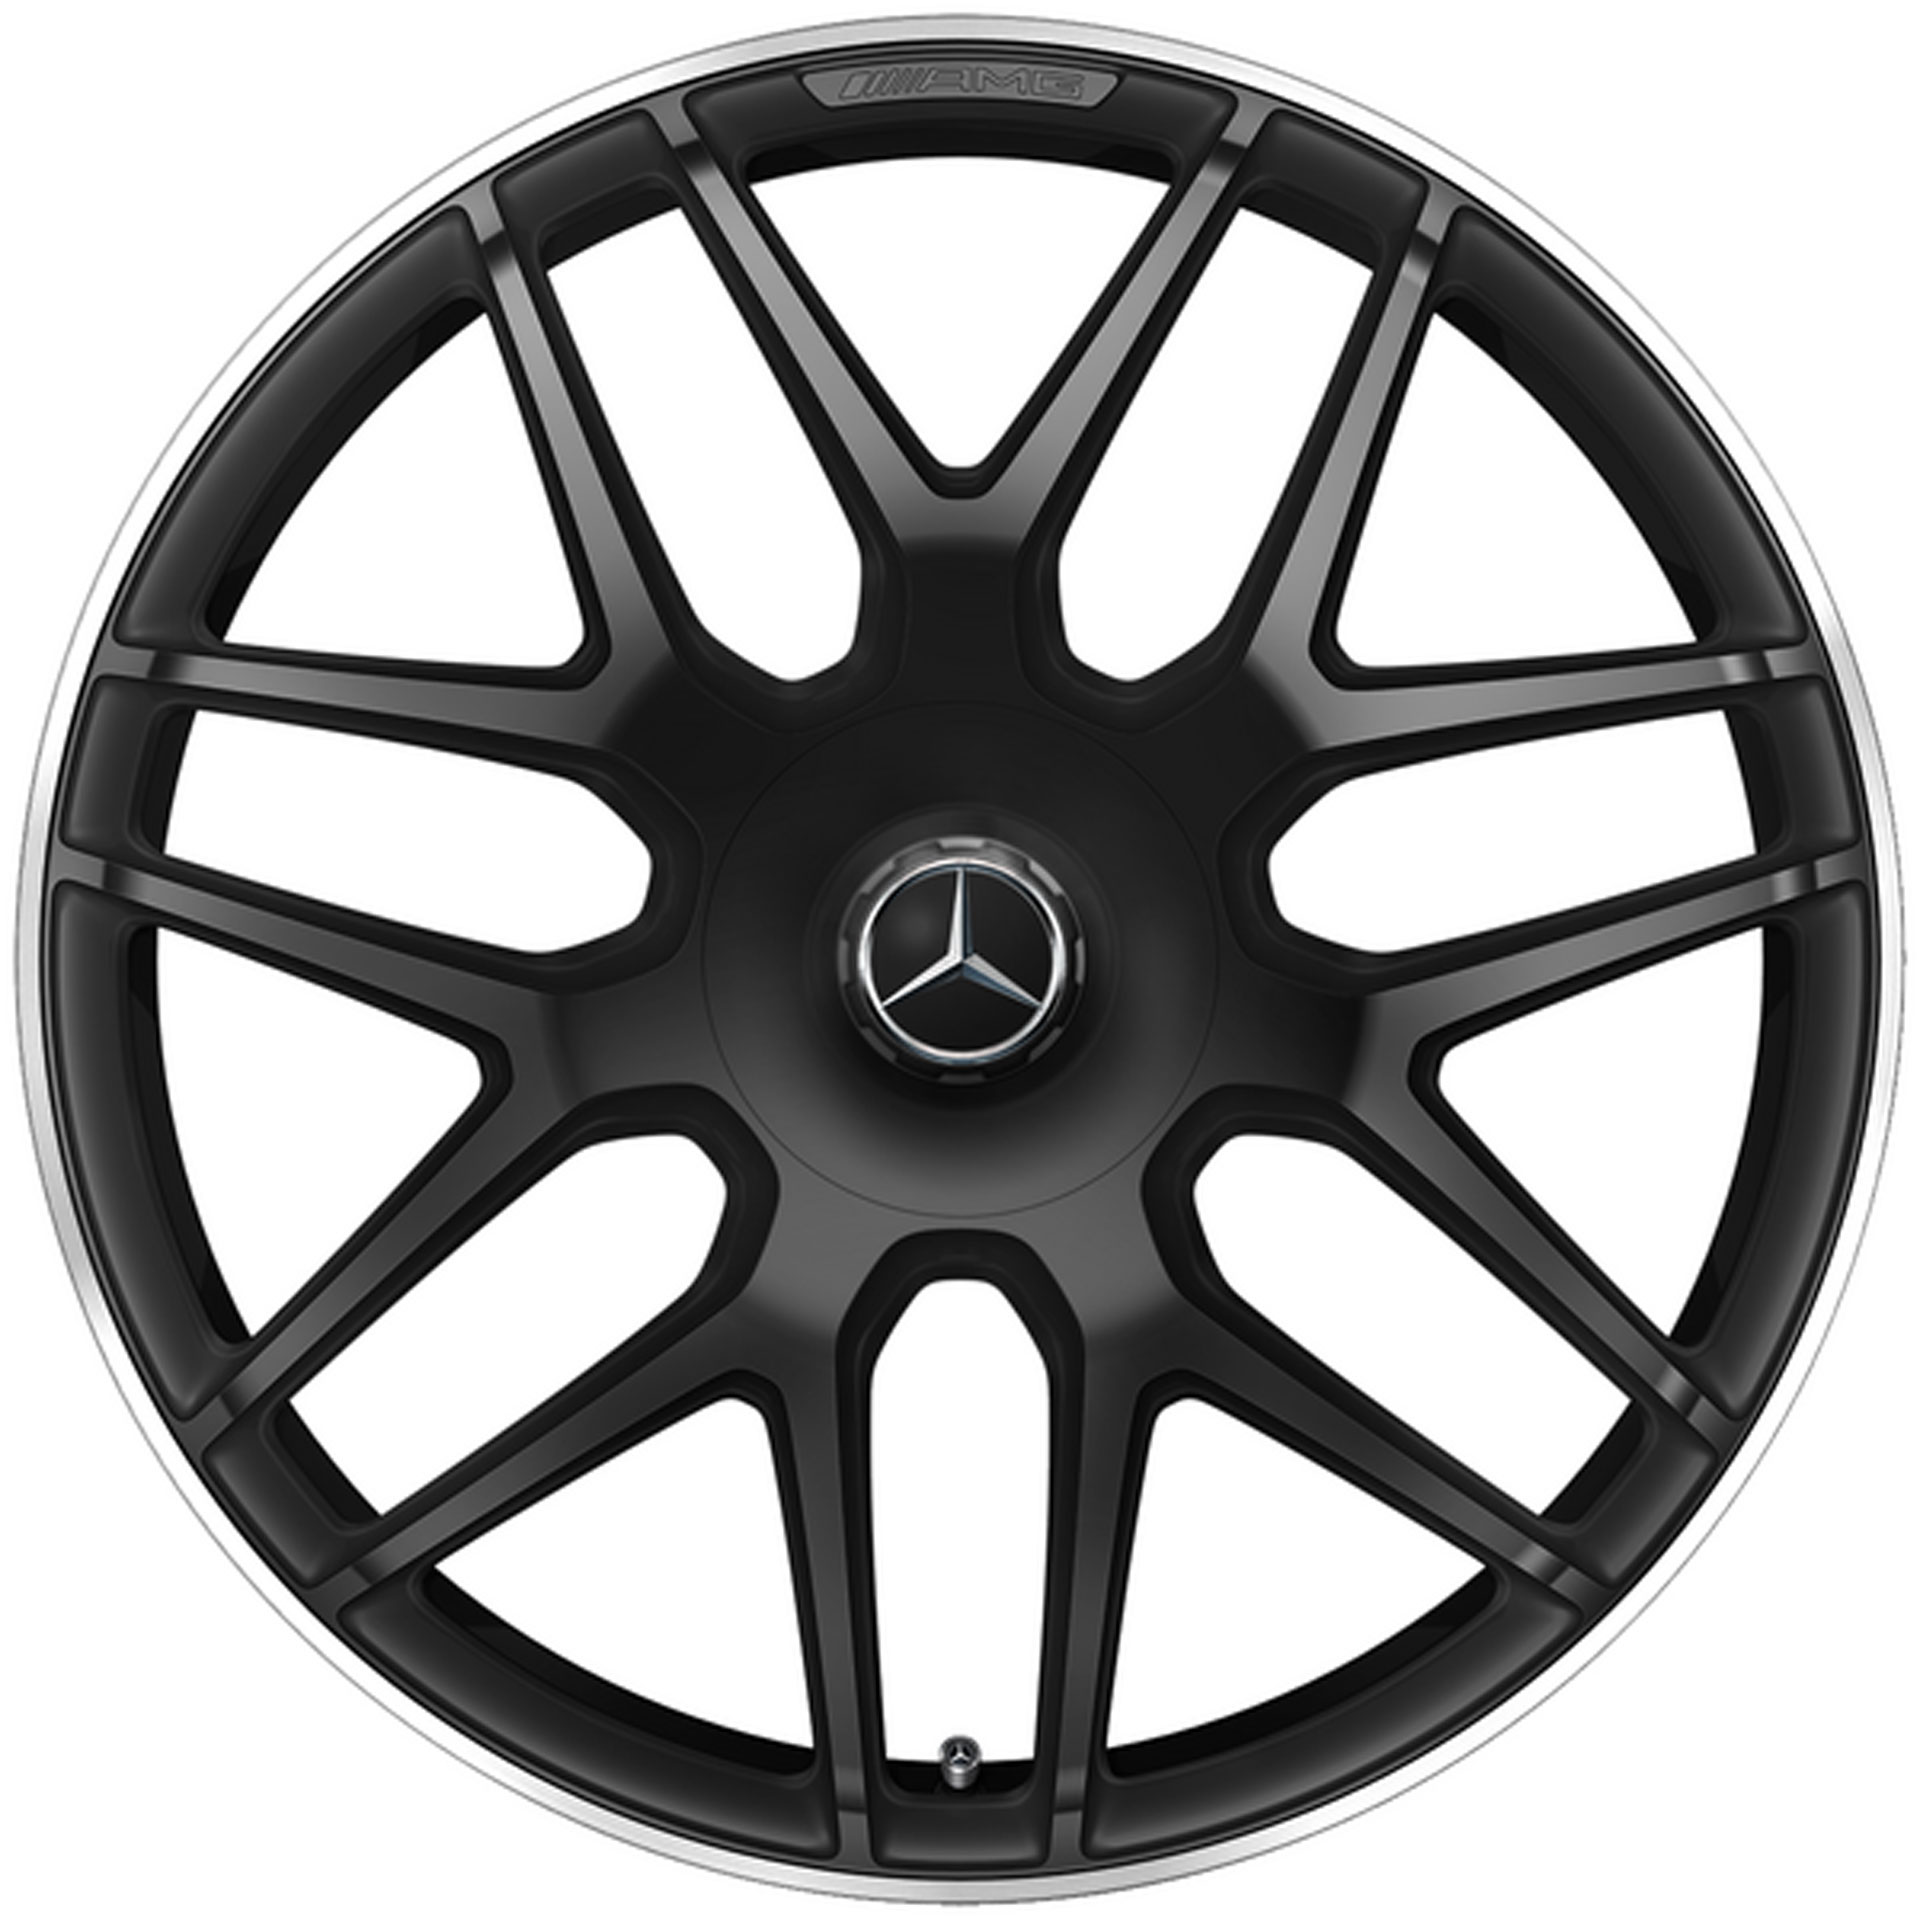 Mercedes-AMG Schmiederad Kreuzspeichen-Design 22 Zoll Leicht